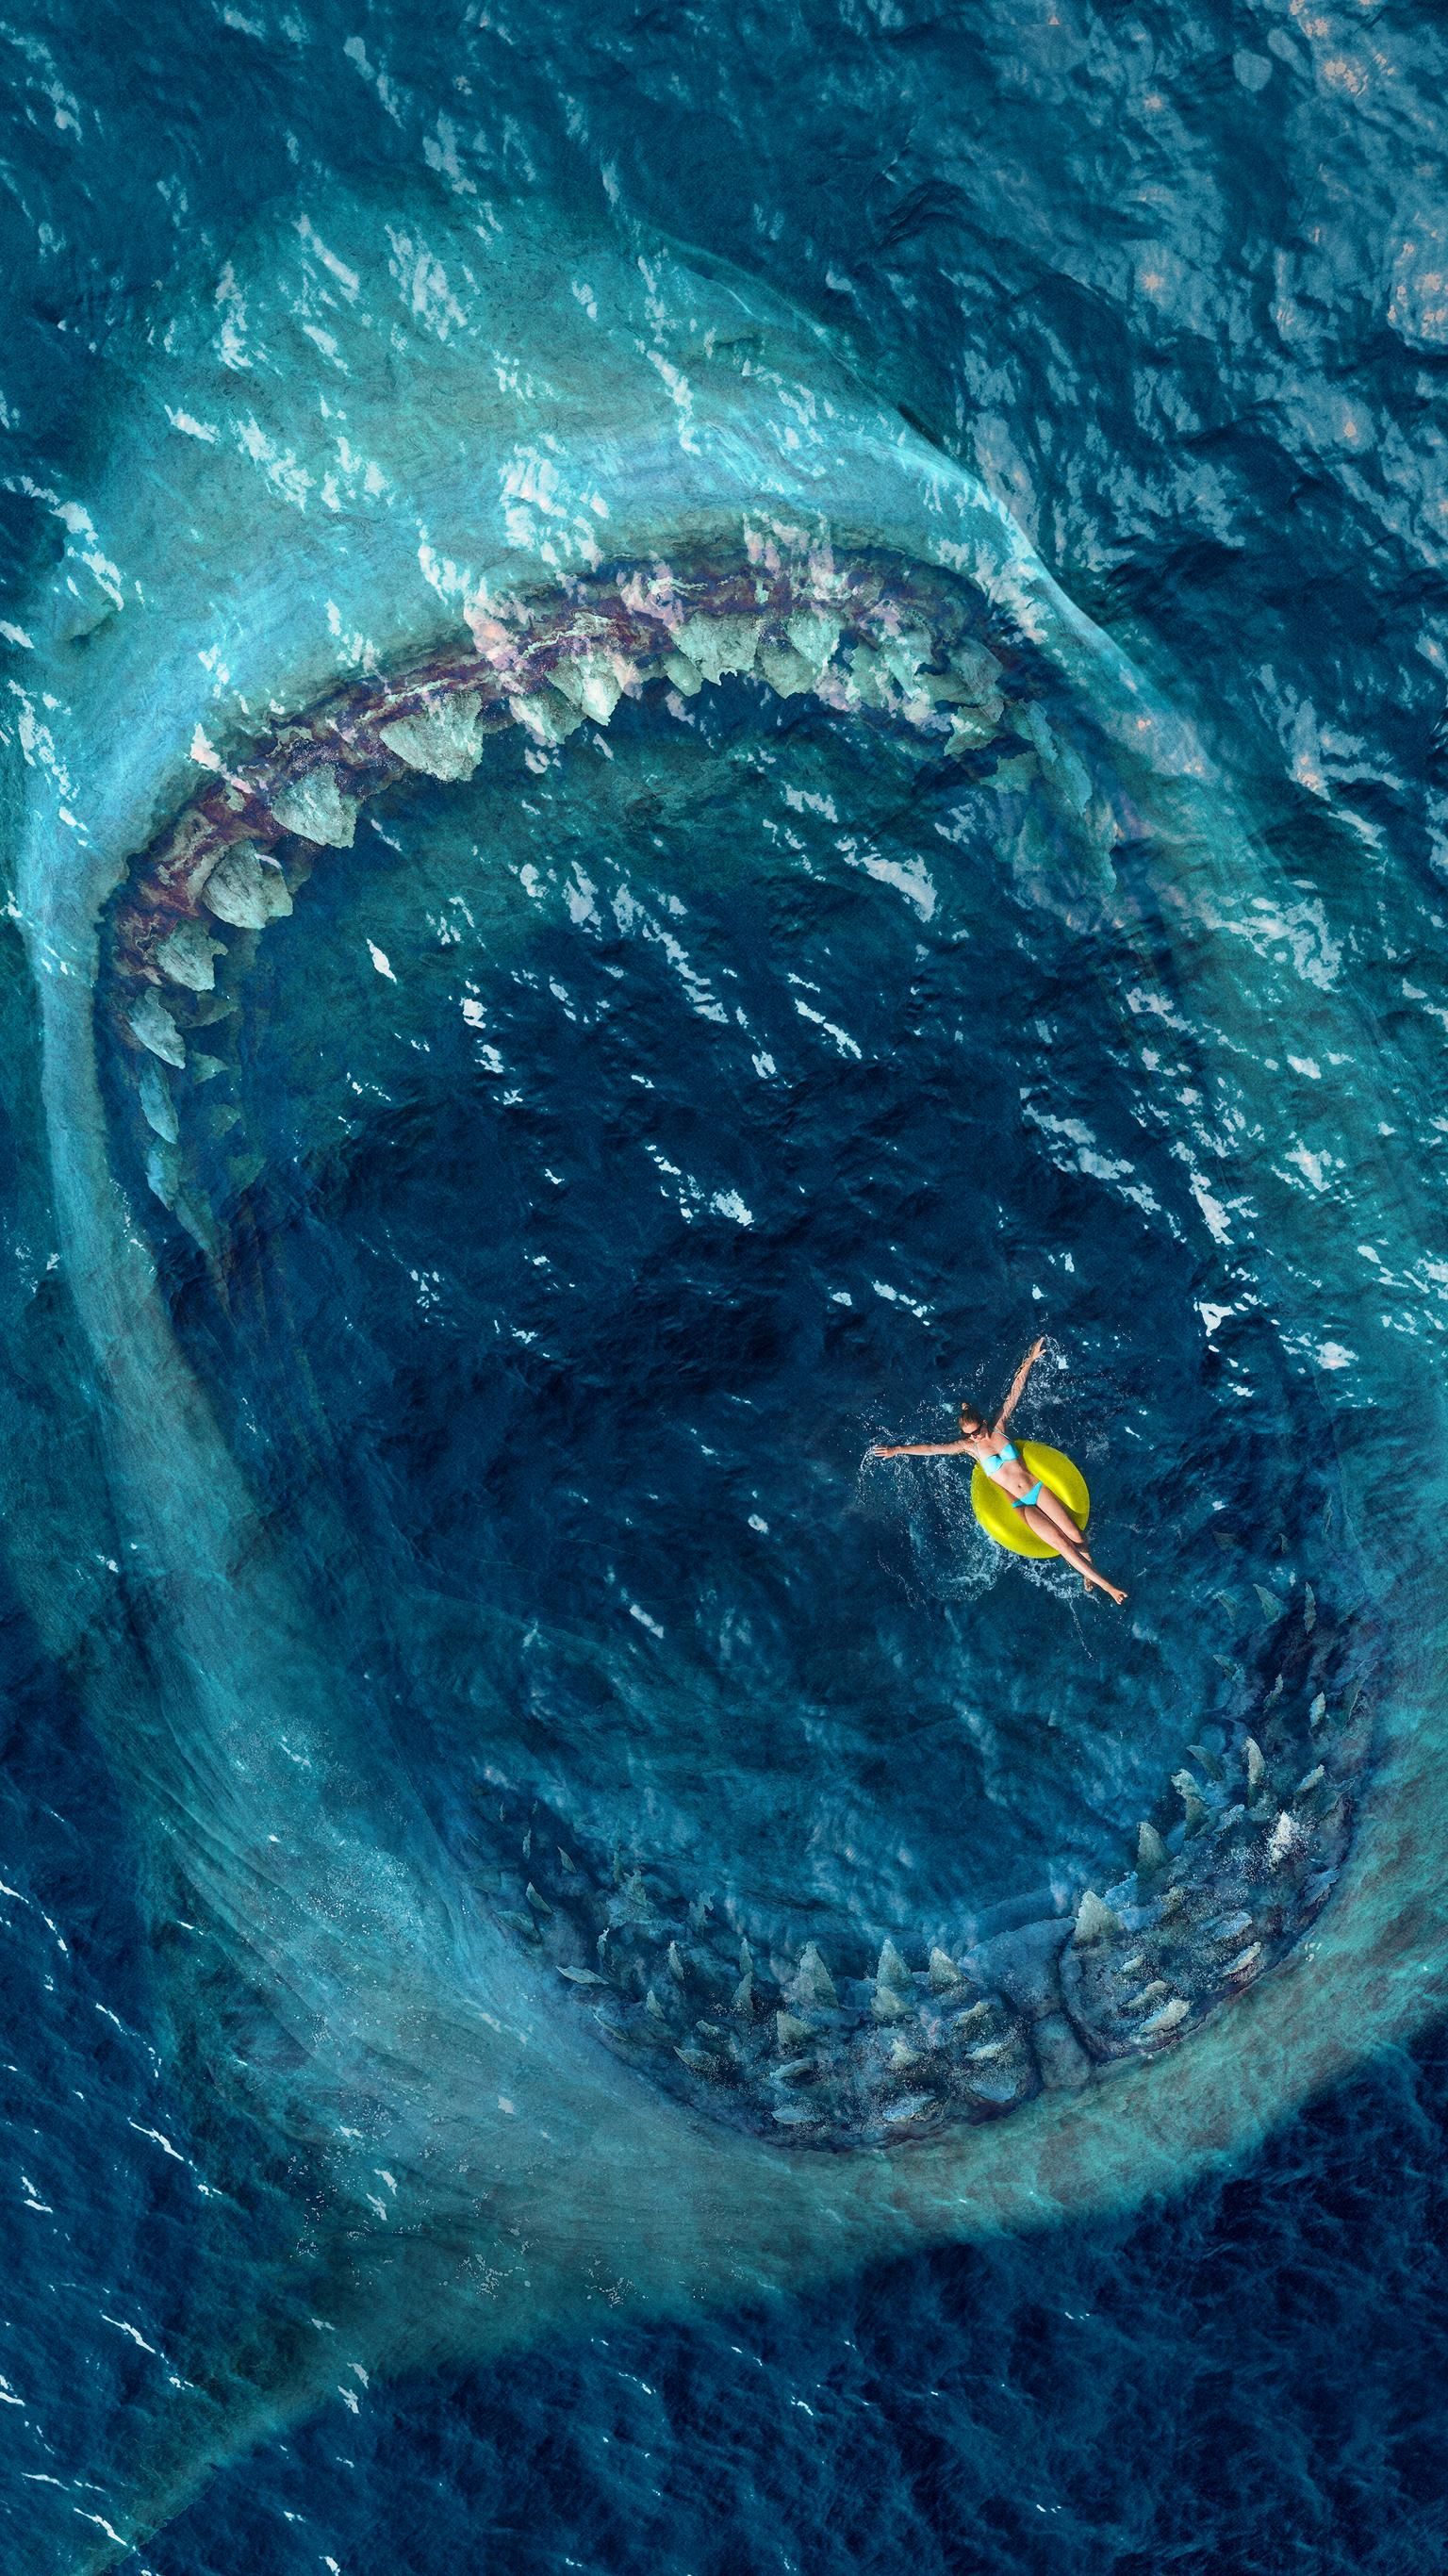 Moviemania High Resolution Movie Wallpaper. Scary Ocean, Shark Picture, Dark Fantasy Art